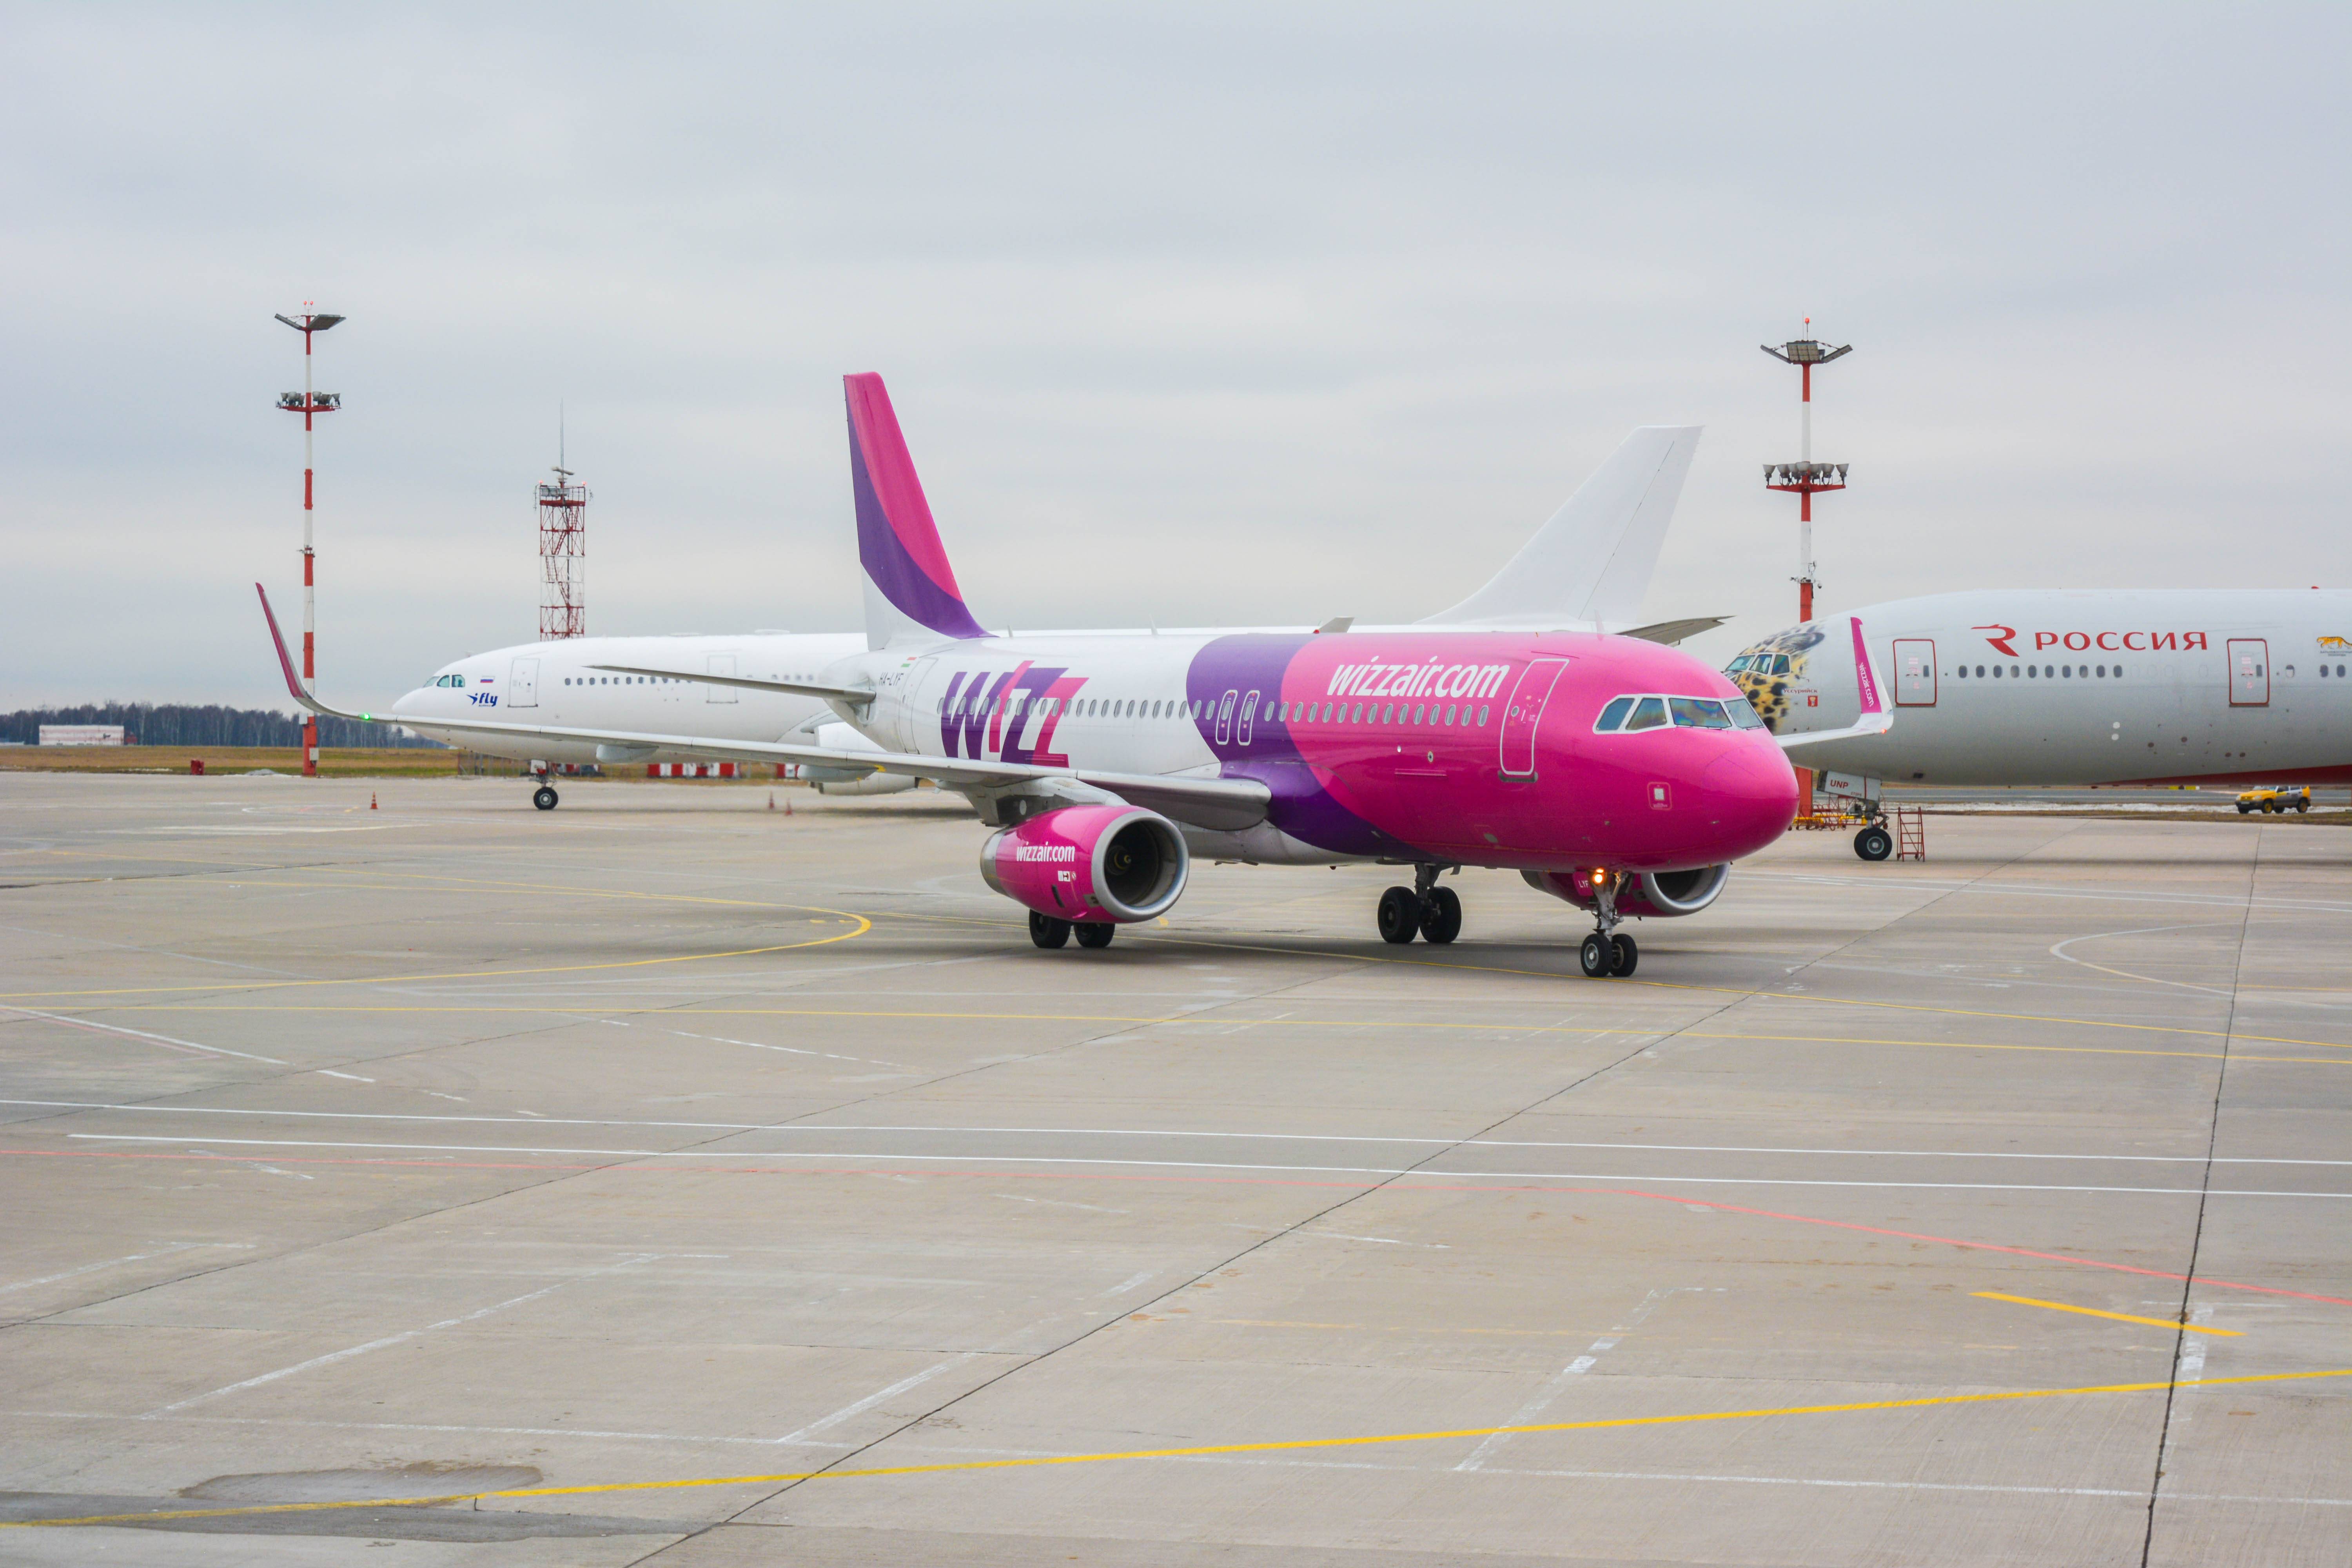 Венгерская авиакомпания «wizz air» с дешевыми билетами и широким выбором направлений перелетов